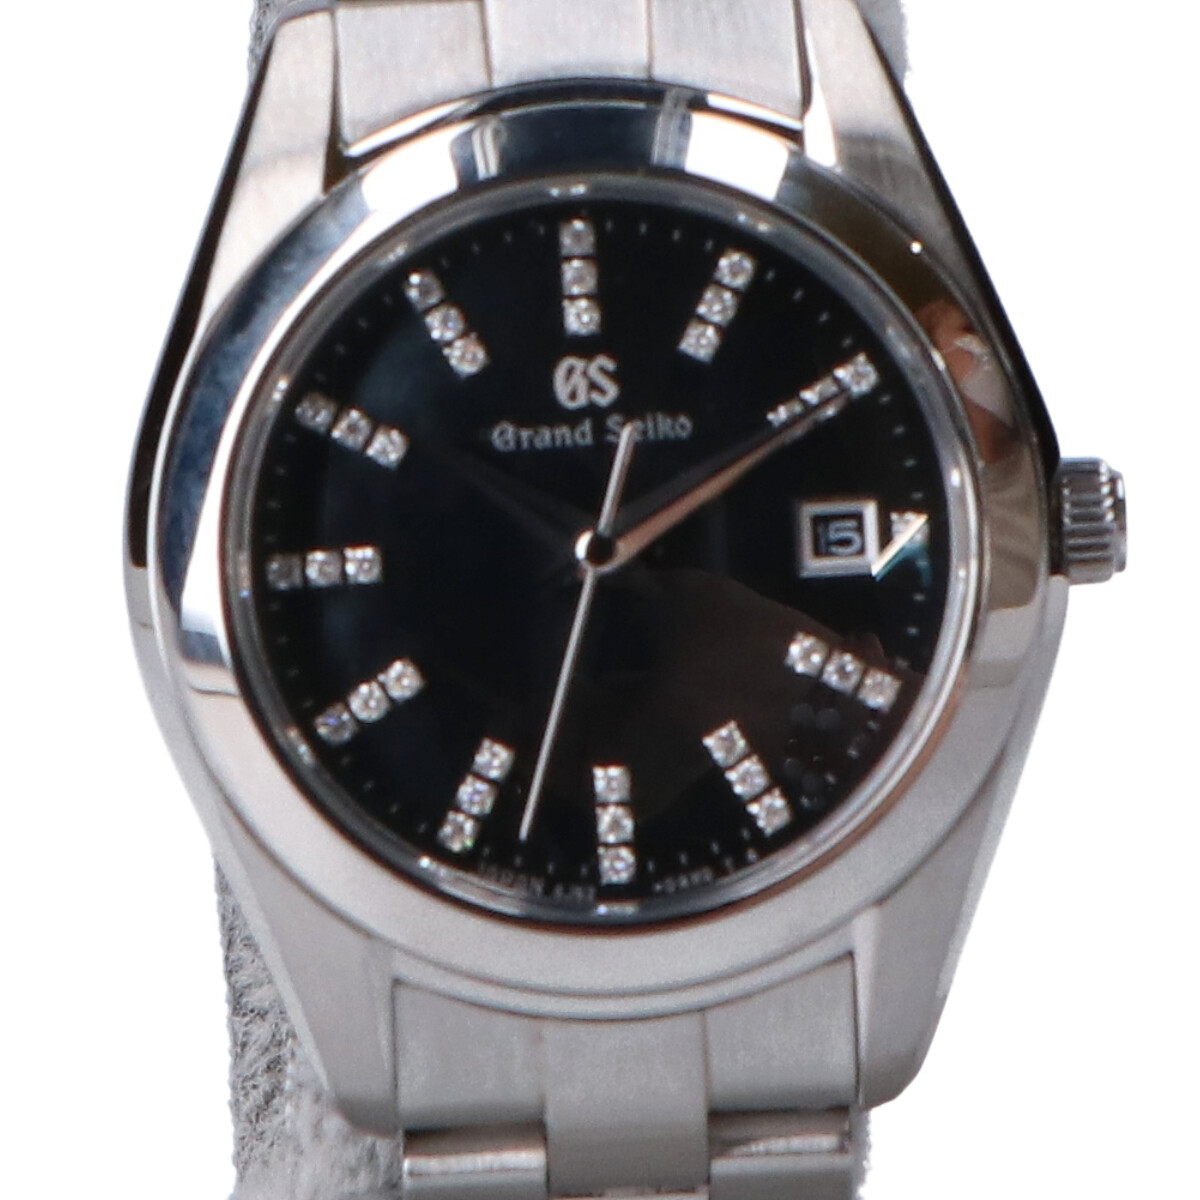 グランドセイコーのマスターショップ限定エレガントコレクション STGF271 シェル×ダイヤモンド文字盤 クオーツ腕時計 シルバー×ブラックの買取実績です。